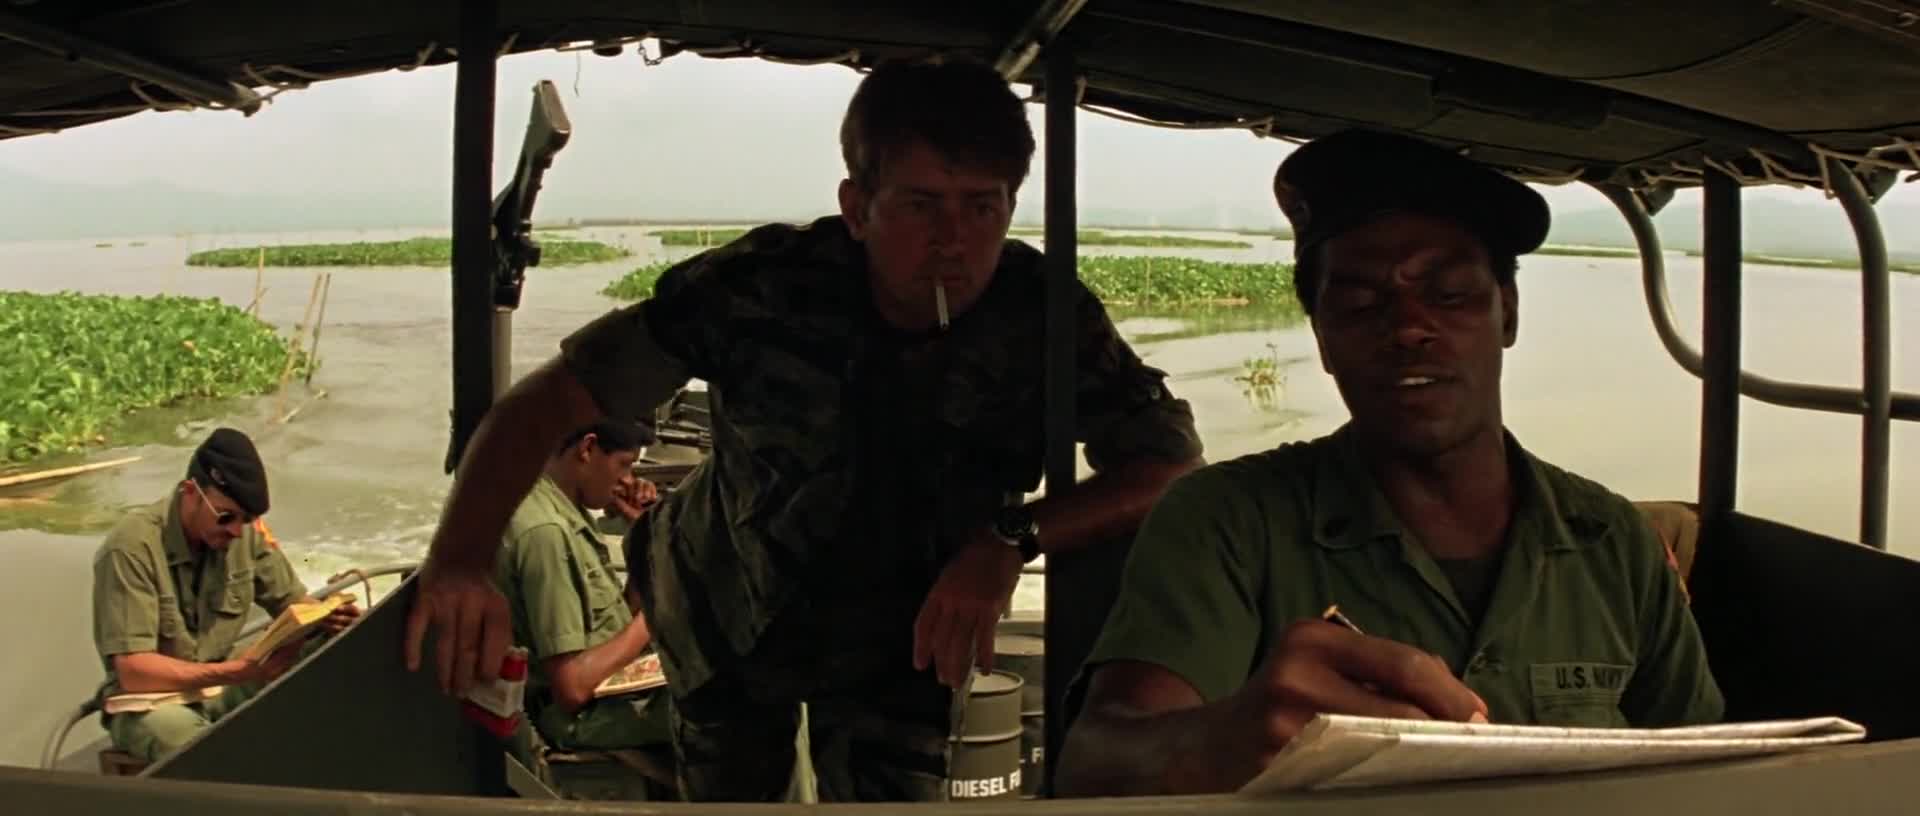 Apokalypsa (Martin Sheen Marlon Brando Robert Duvall 1979 Drama Válečný 1080p ) Cz dabing mkv